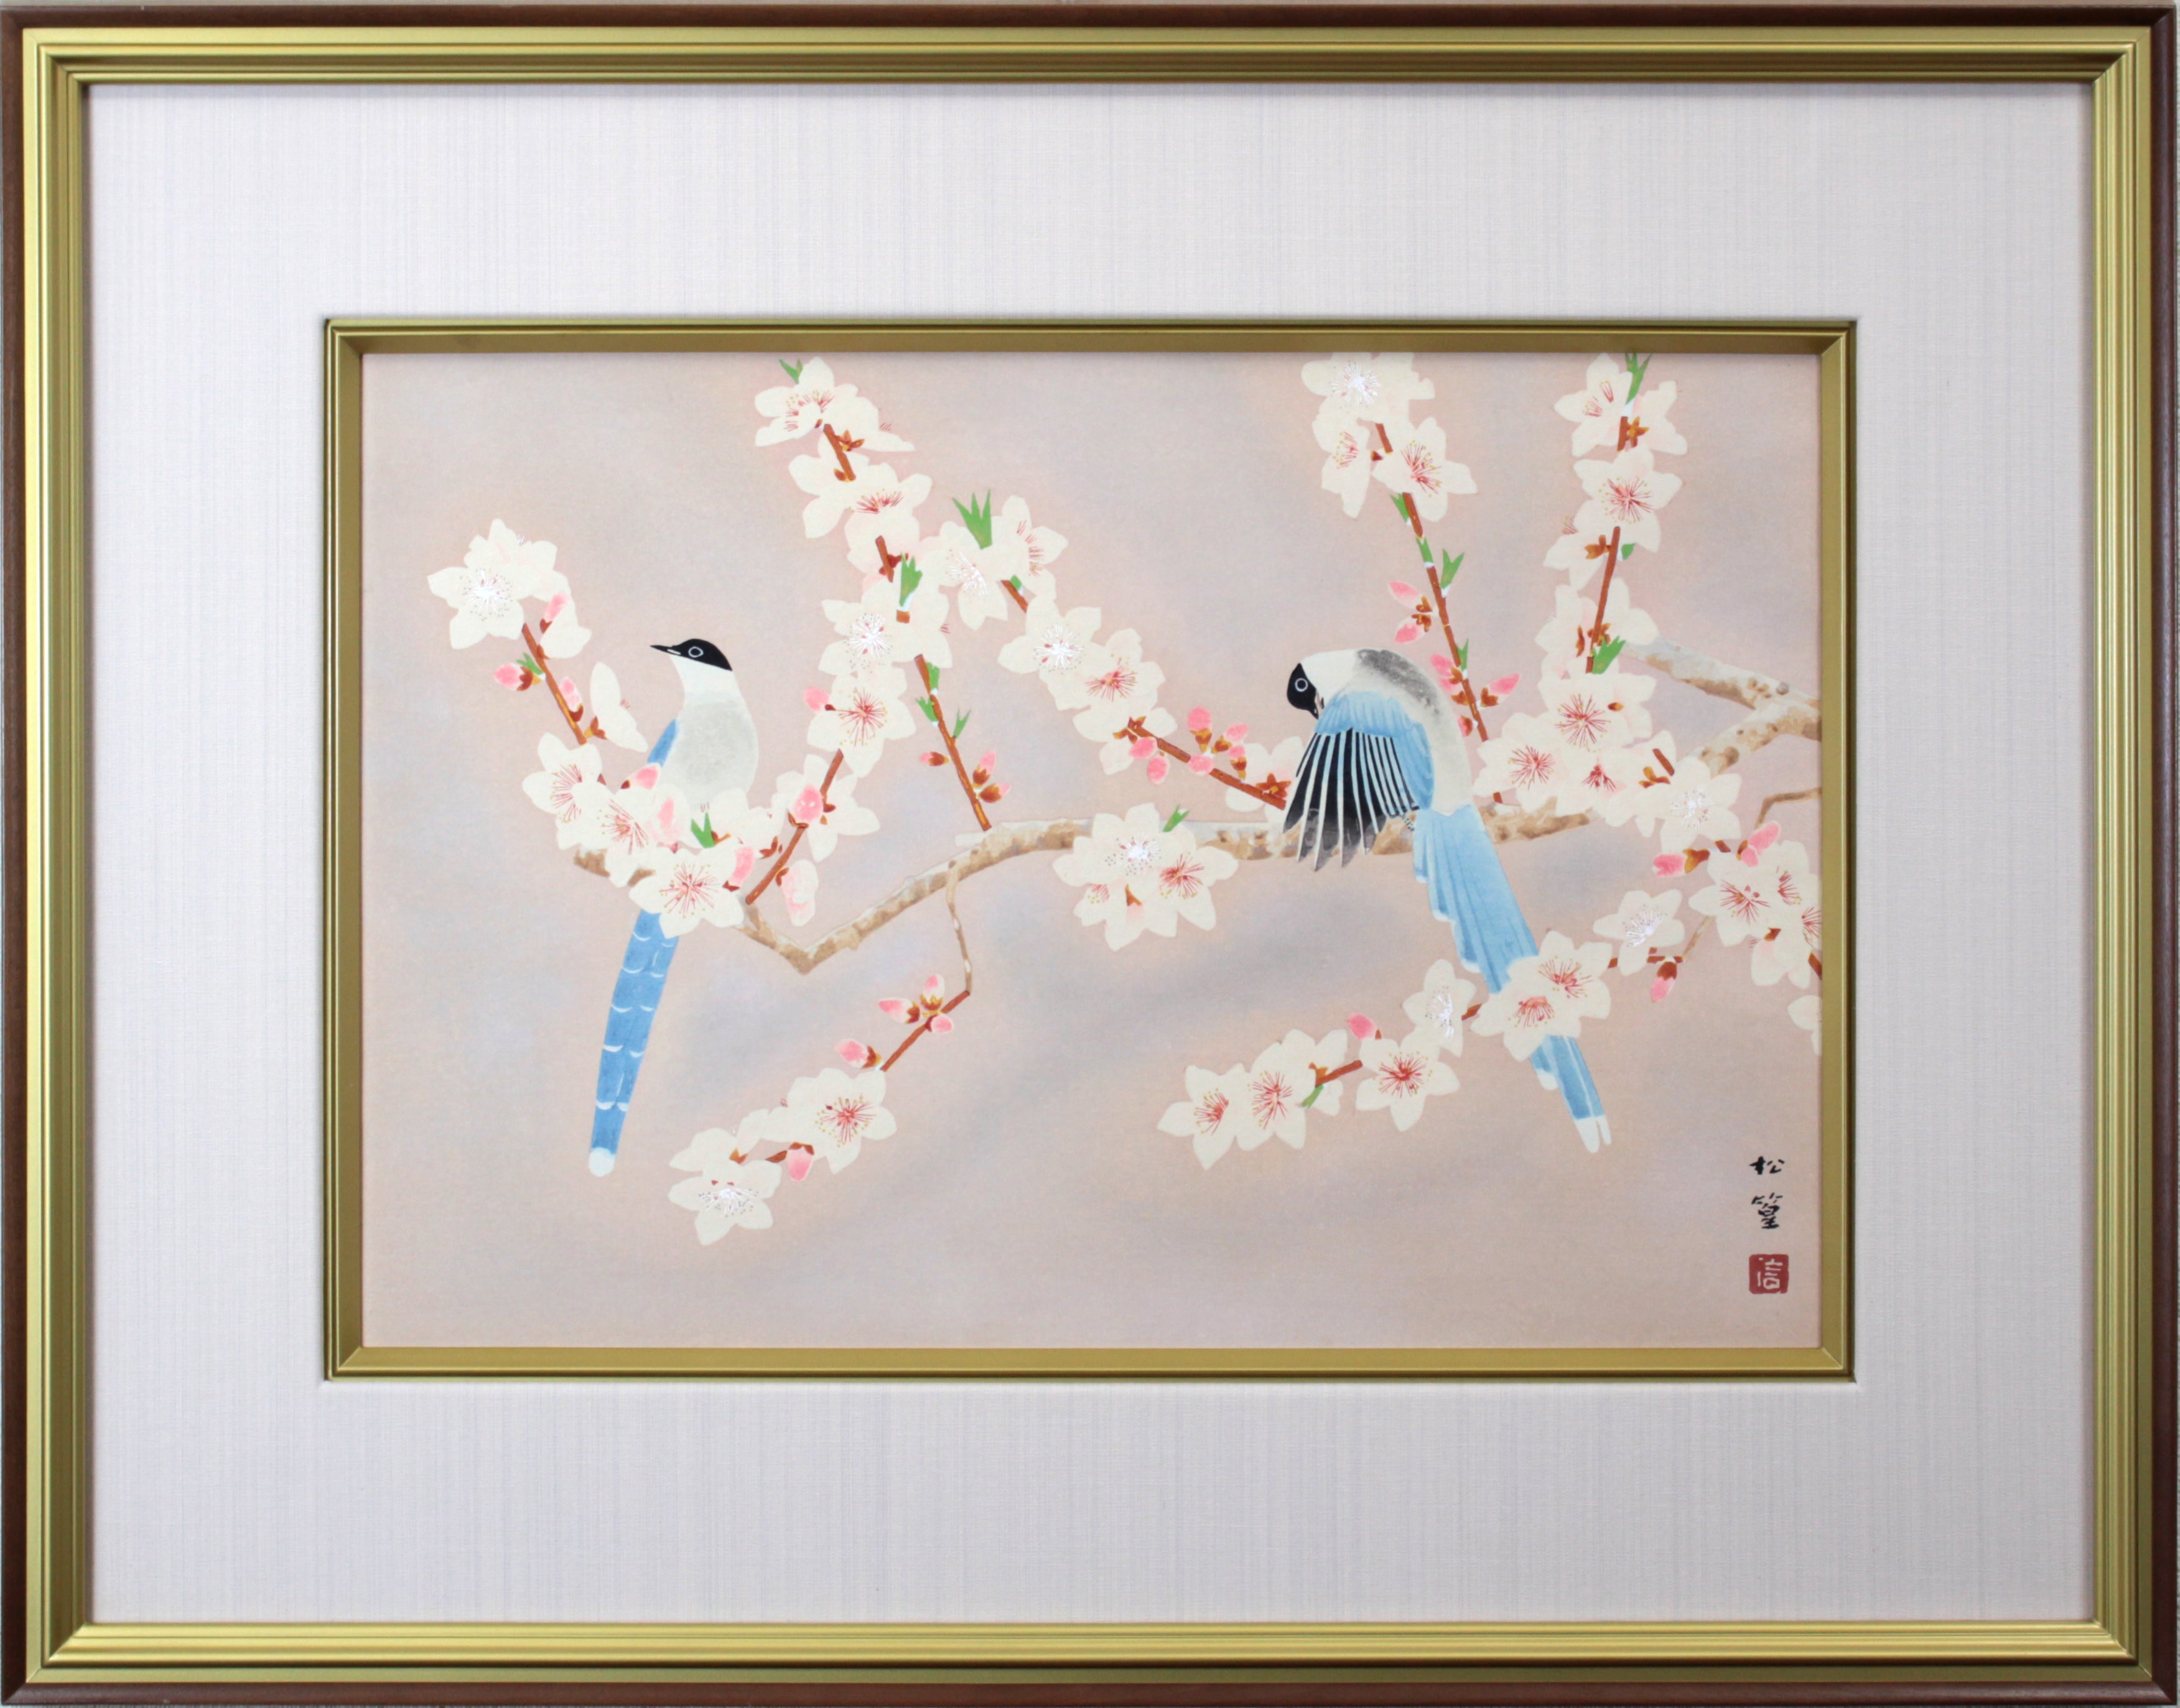 保証半額。◆楾◆ 上村松篁 「桔梗」 肉筆日本画 色紙 [B180]OO/22.3廻/OD/(120) 花鳥、鳥獣